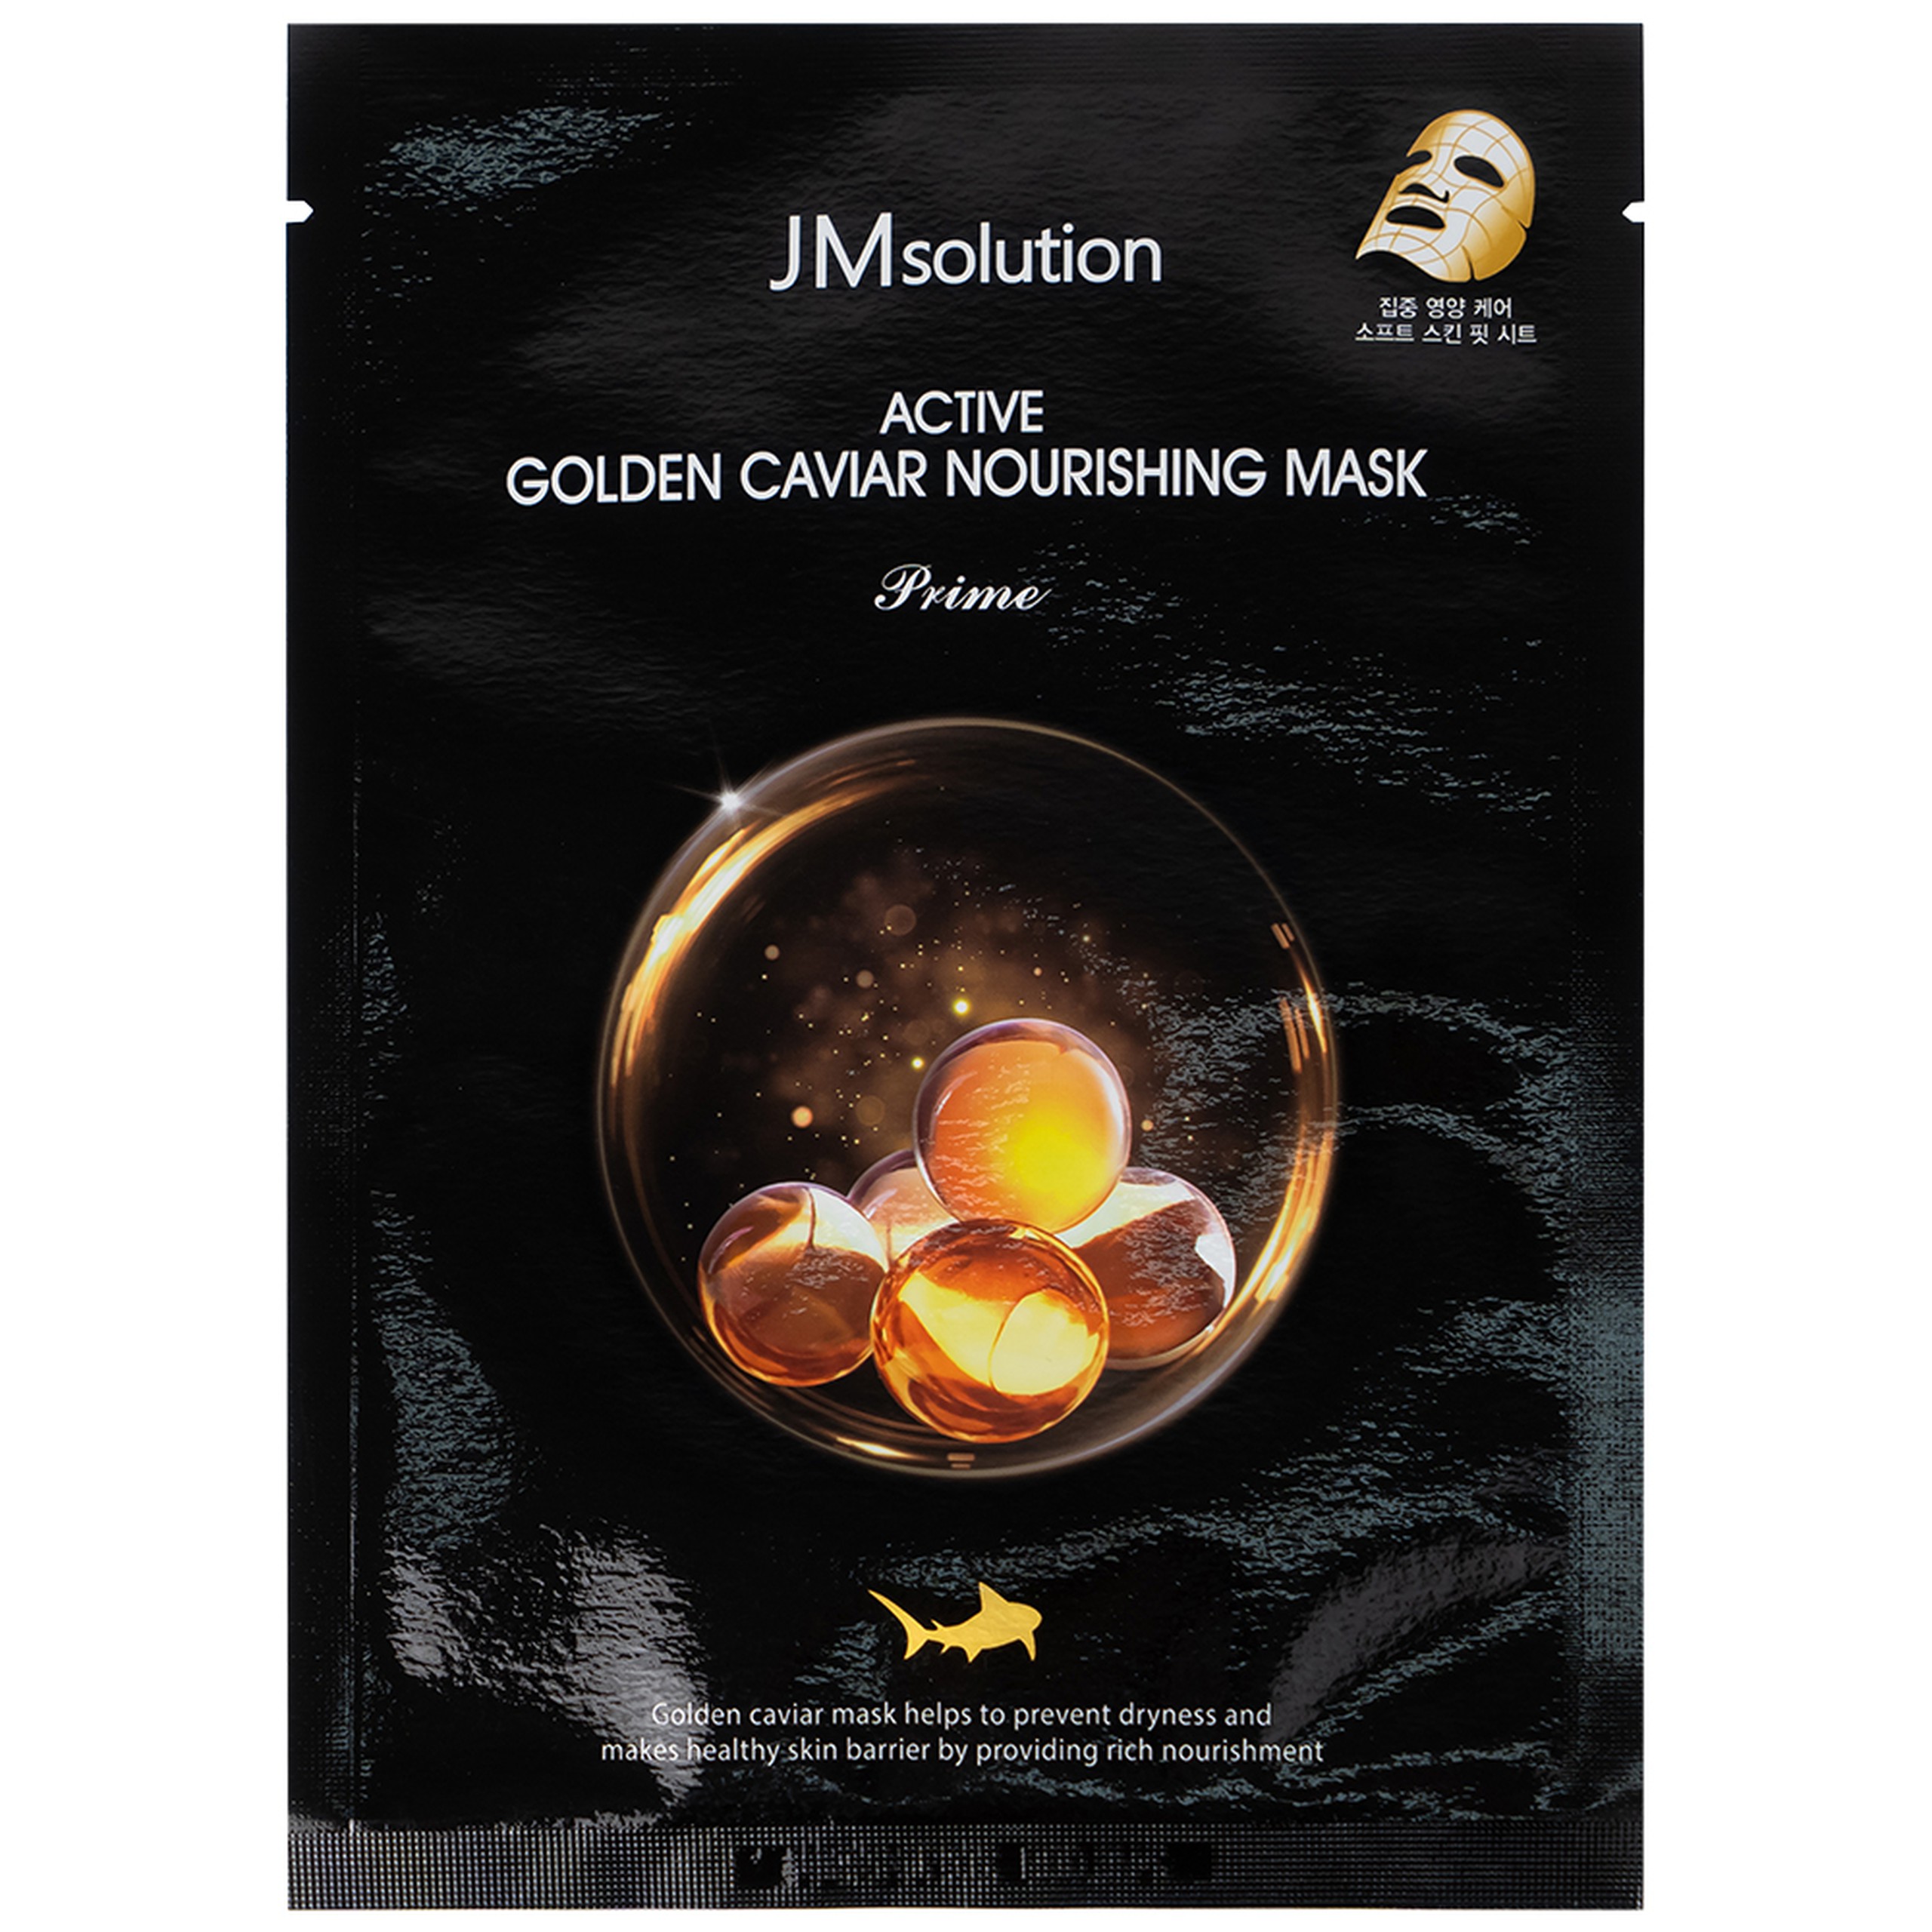 Mặt nạ Active Golden Caviar Nourishing Mask JMsolution cung cấp độ ẩm, giáp sáng màu da, giúp da căng mịn (30ml)